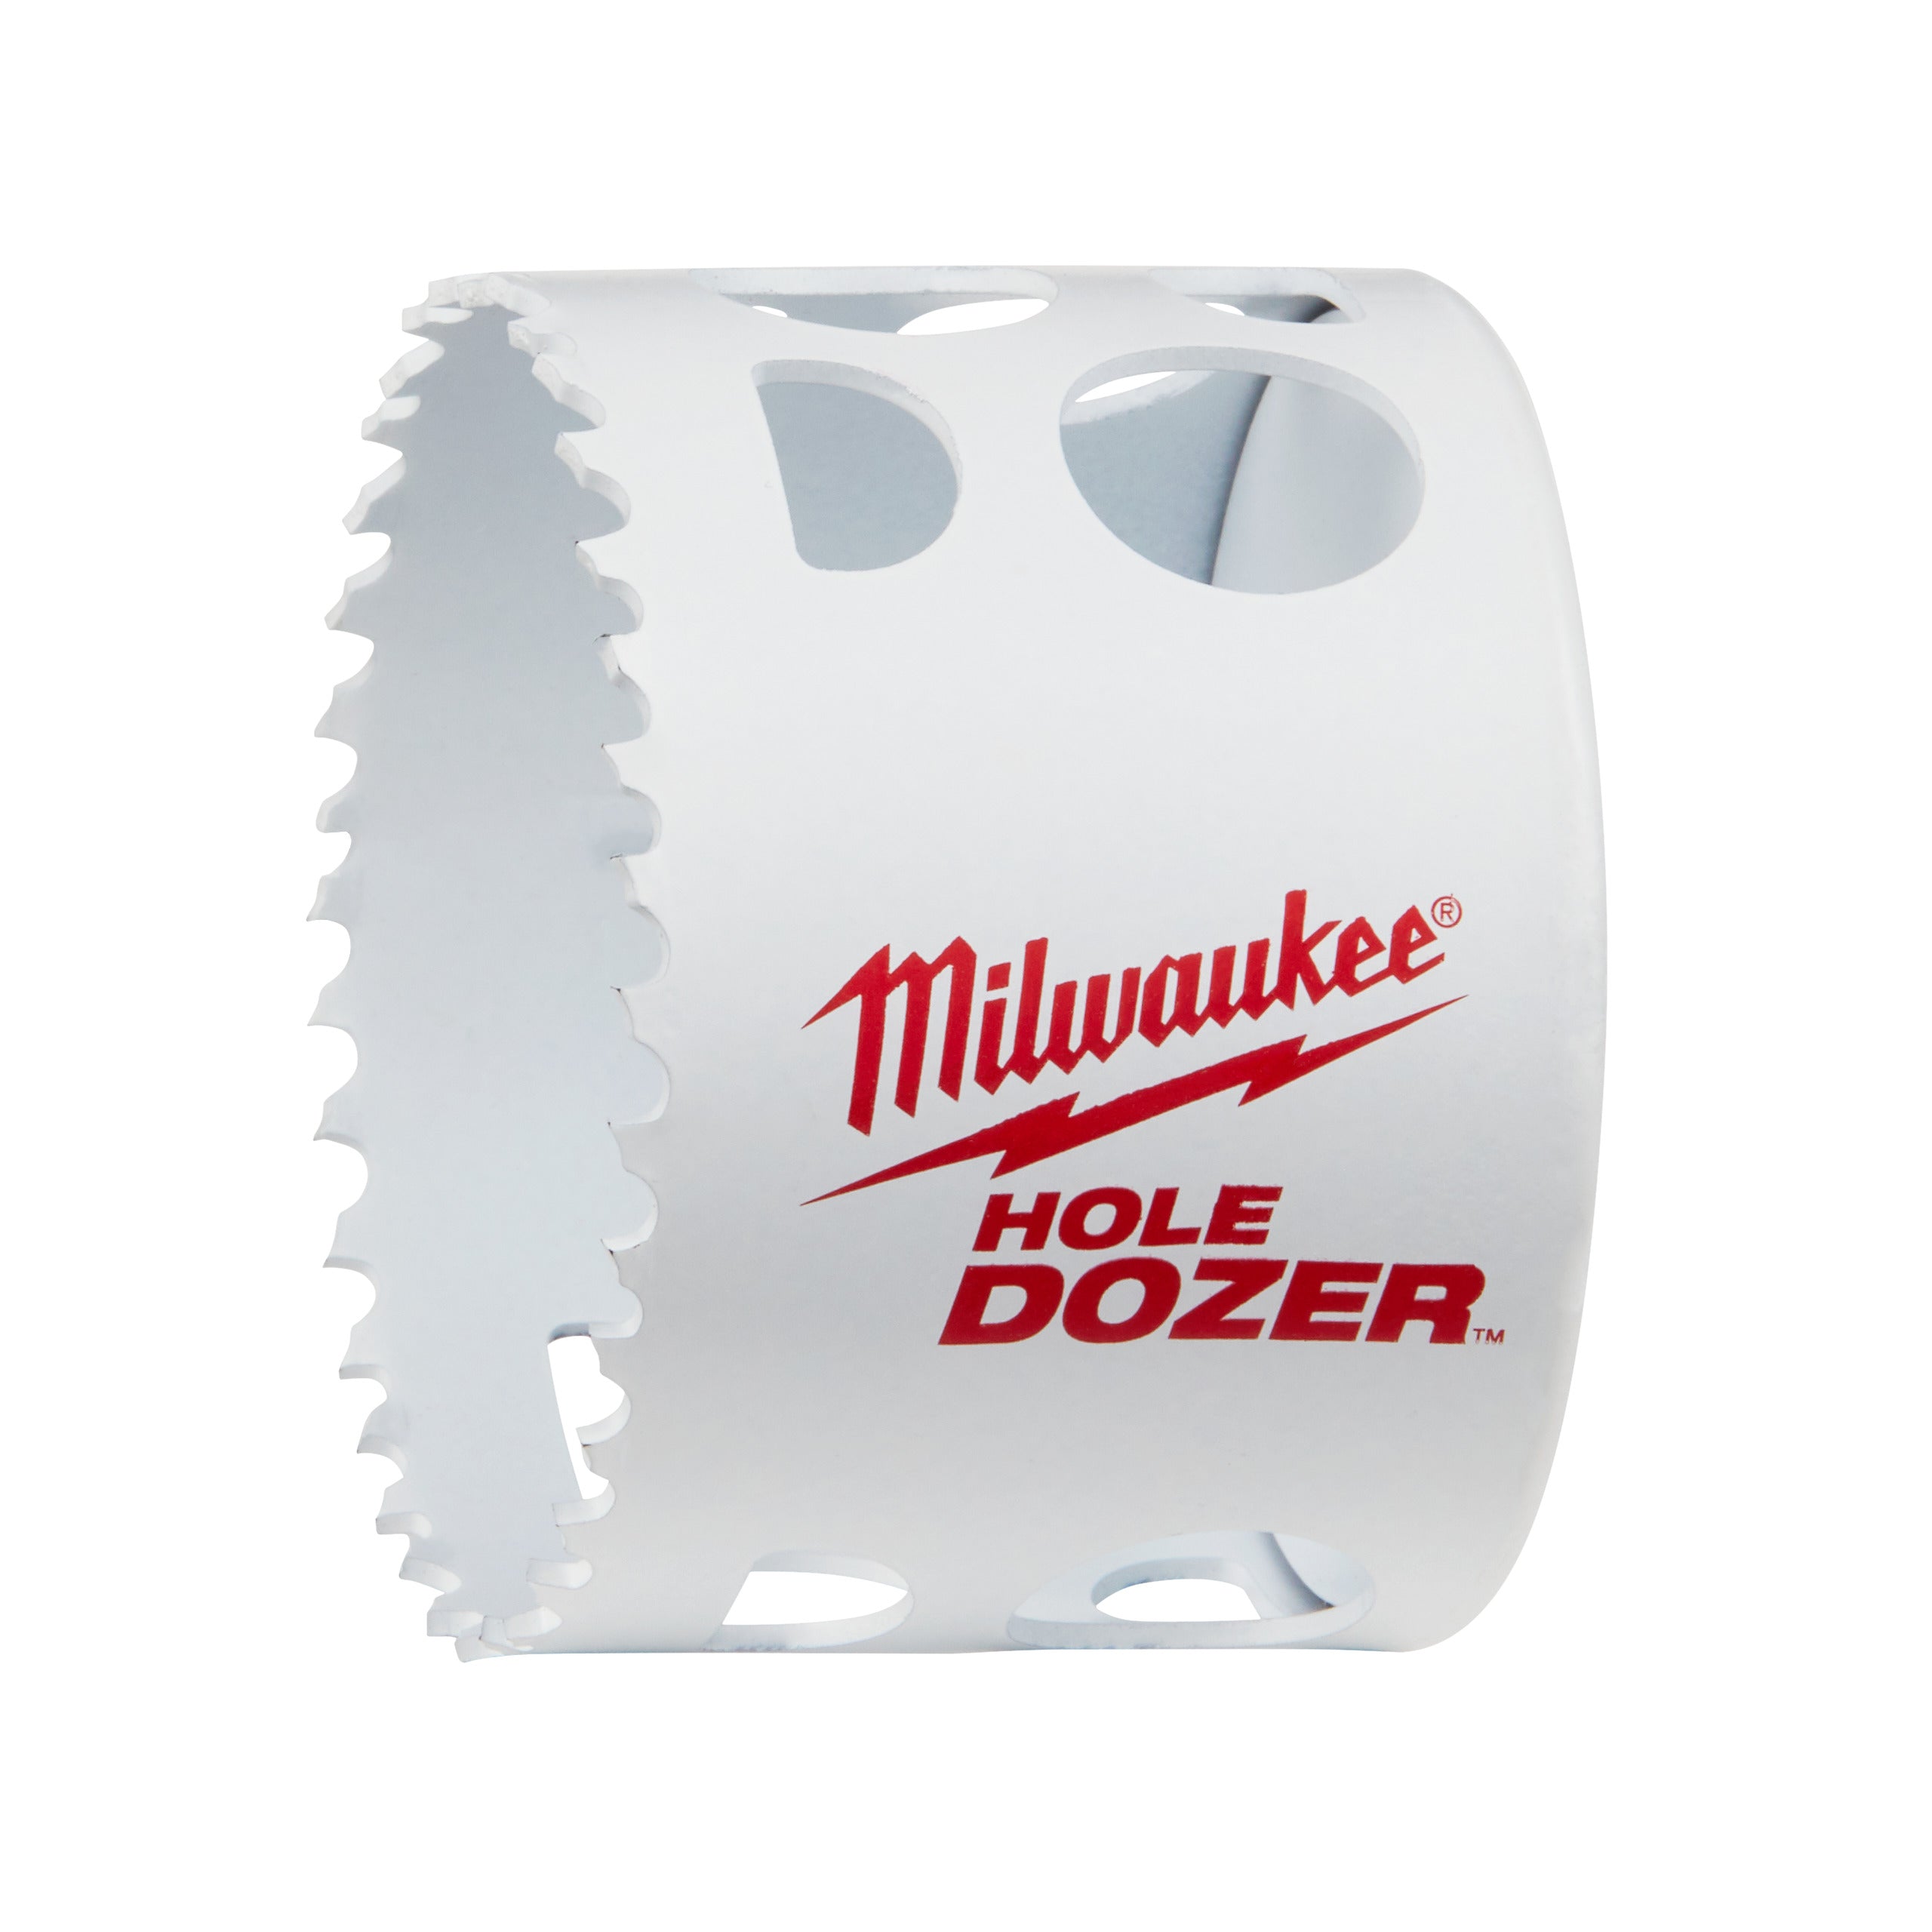 Carotă Milwaukee HOLE DOZER™ bi-metal Ø67 mm 49560158